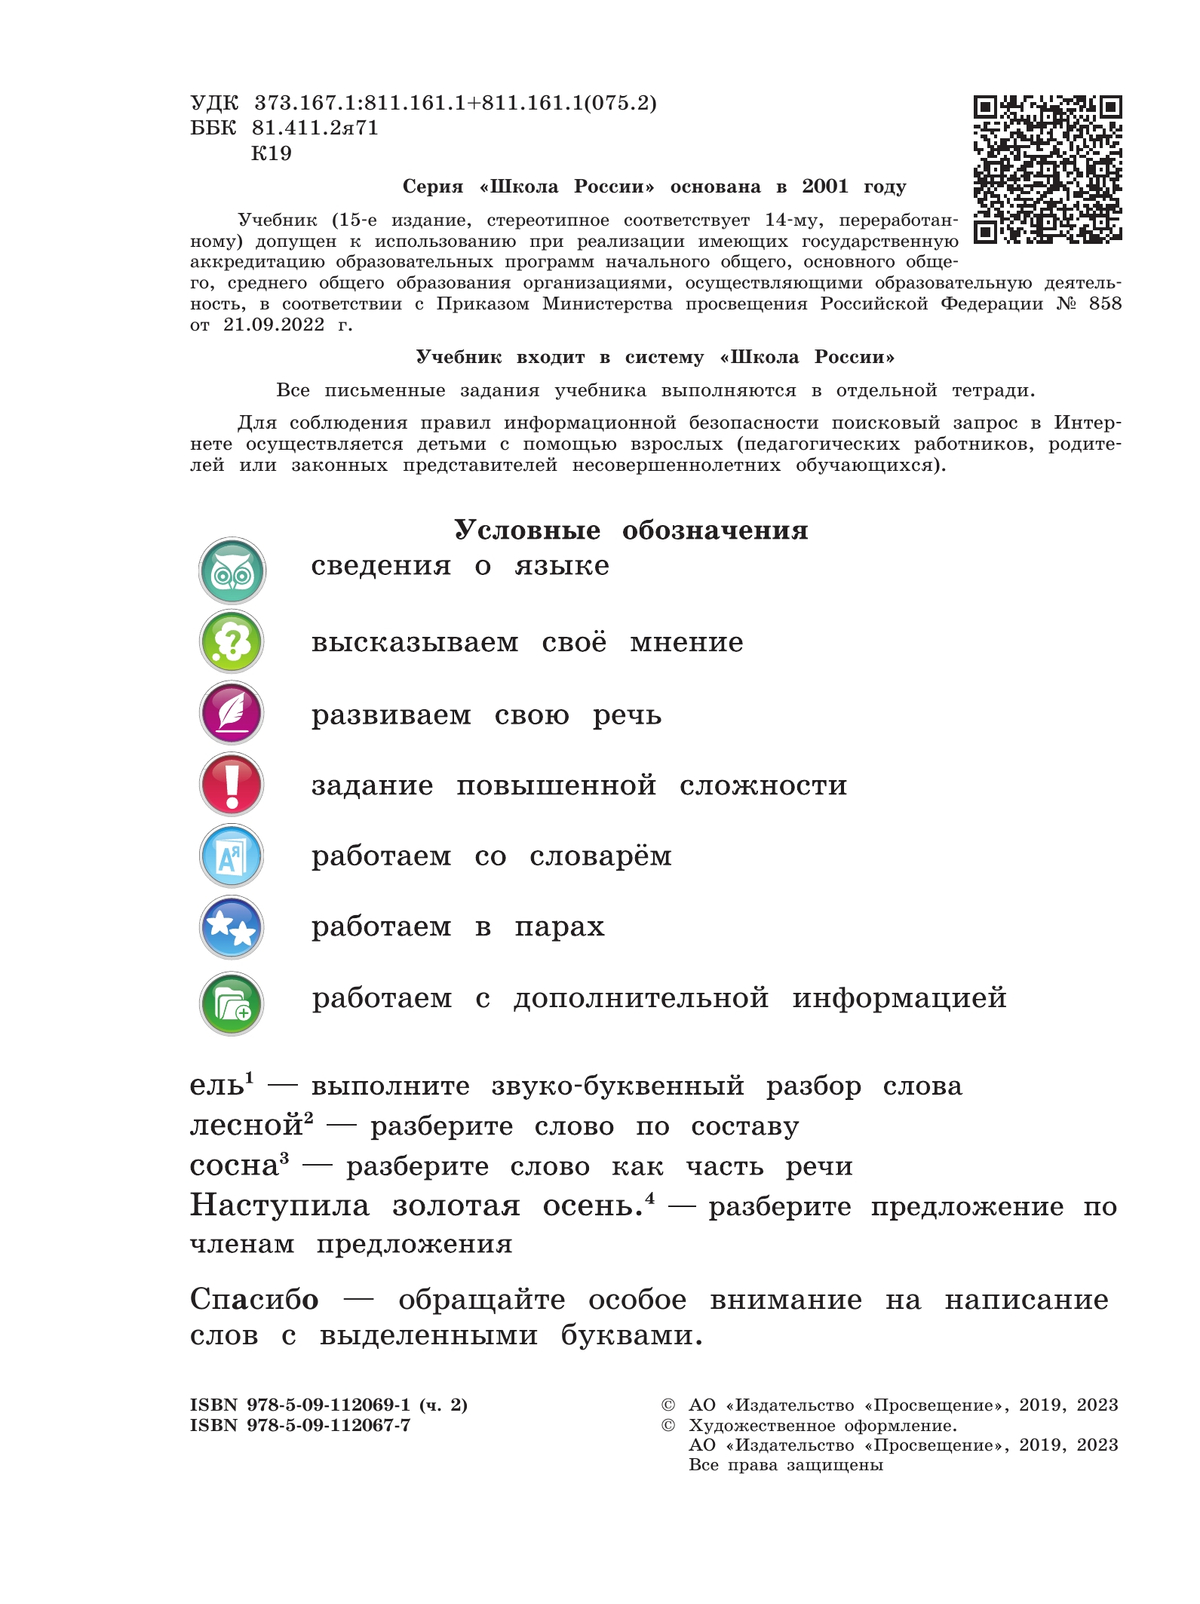 Русский язык. 4 класс. Учебник. В 2 ч. Часть 2 8